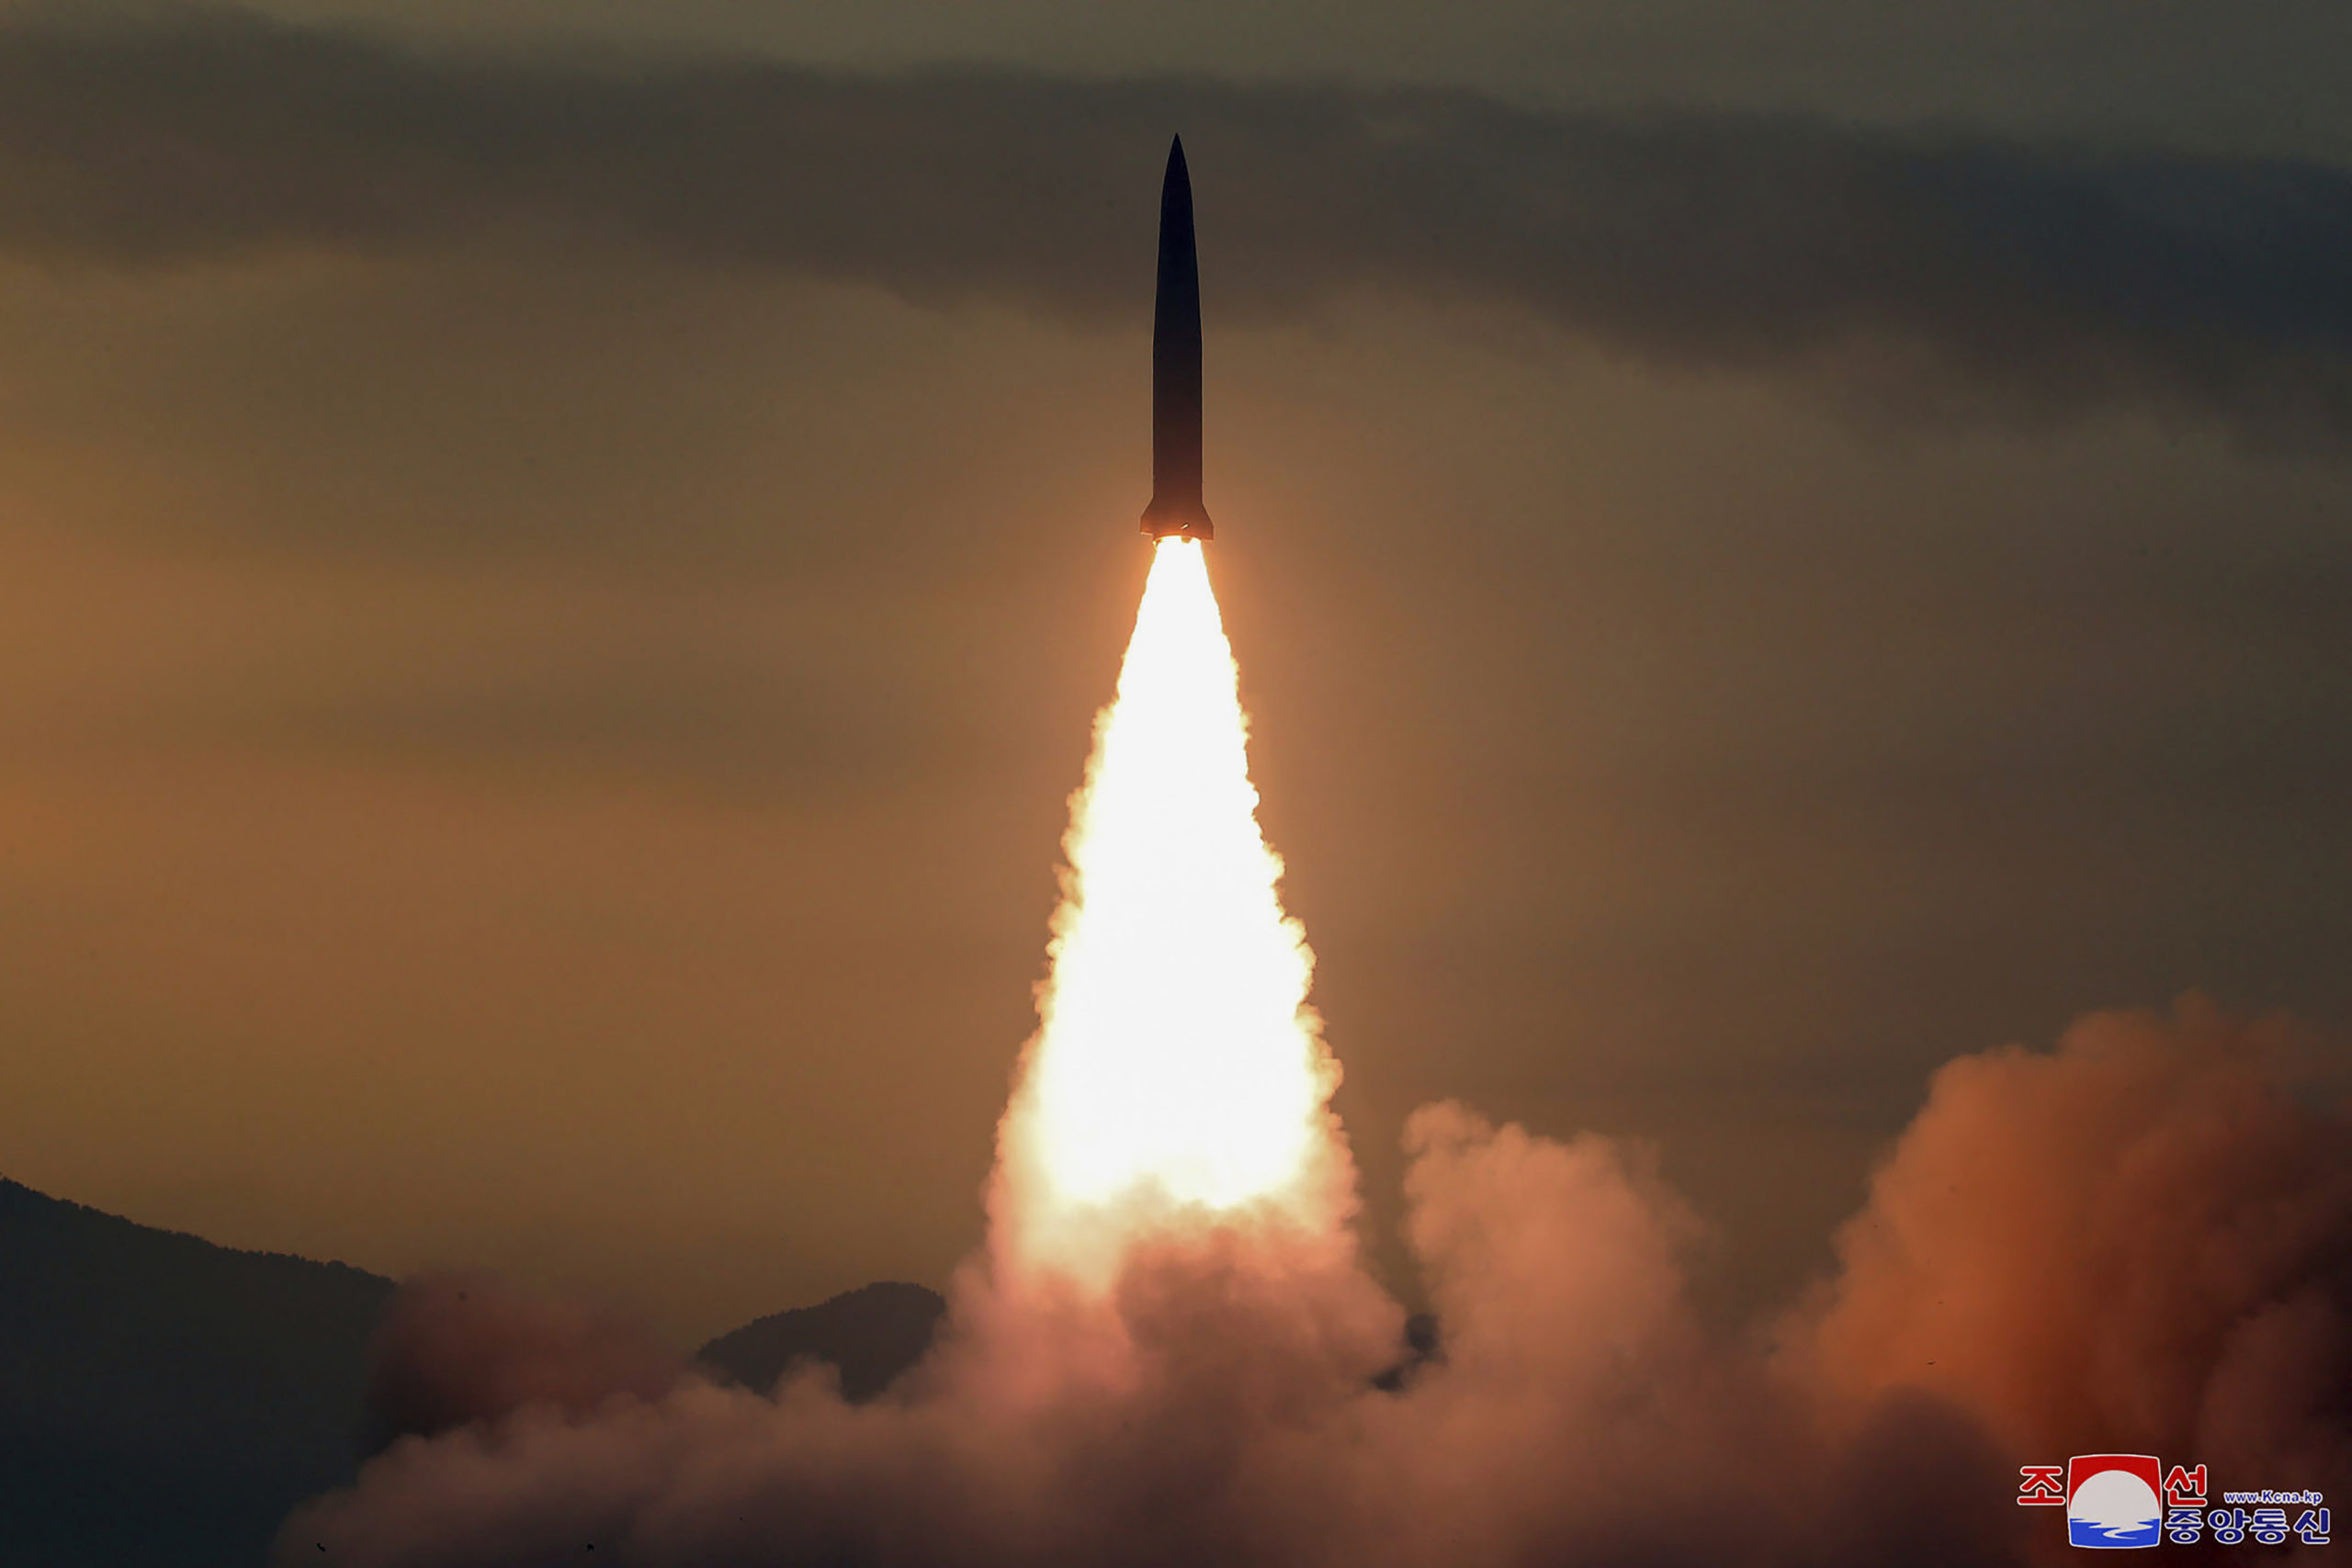 Στην εκτόξευση βαλλιστικού πυραύλου προχώρησε σήμερα η Βόρεια Κορέα